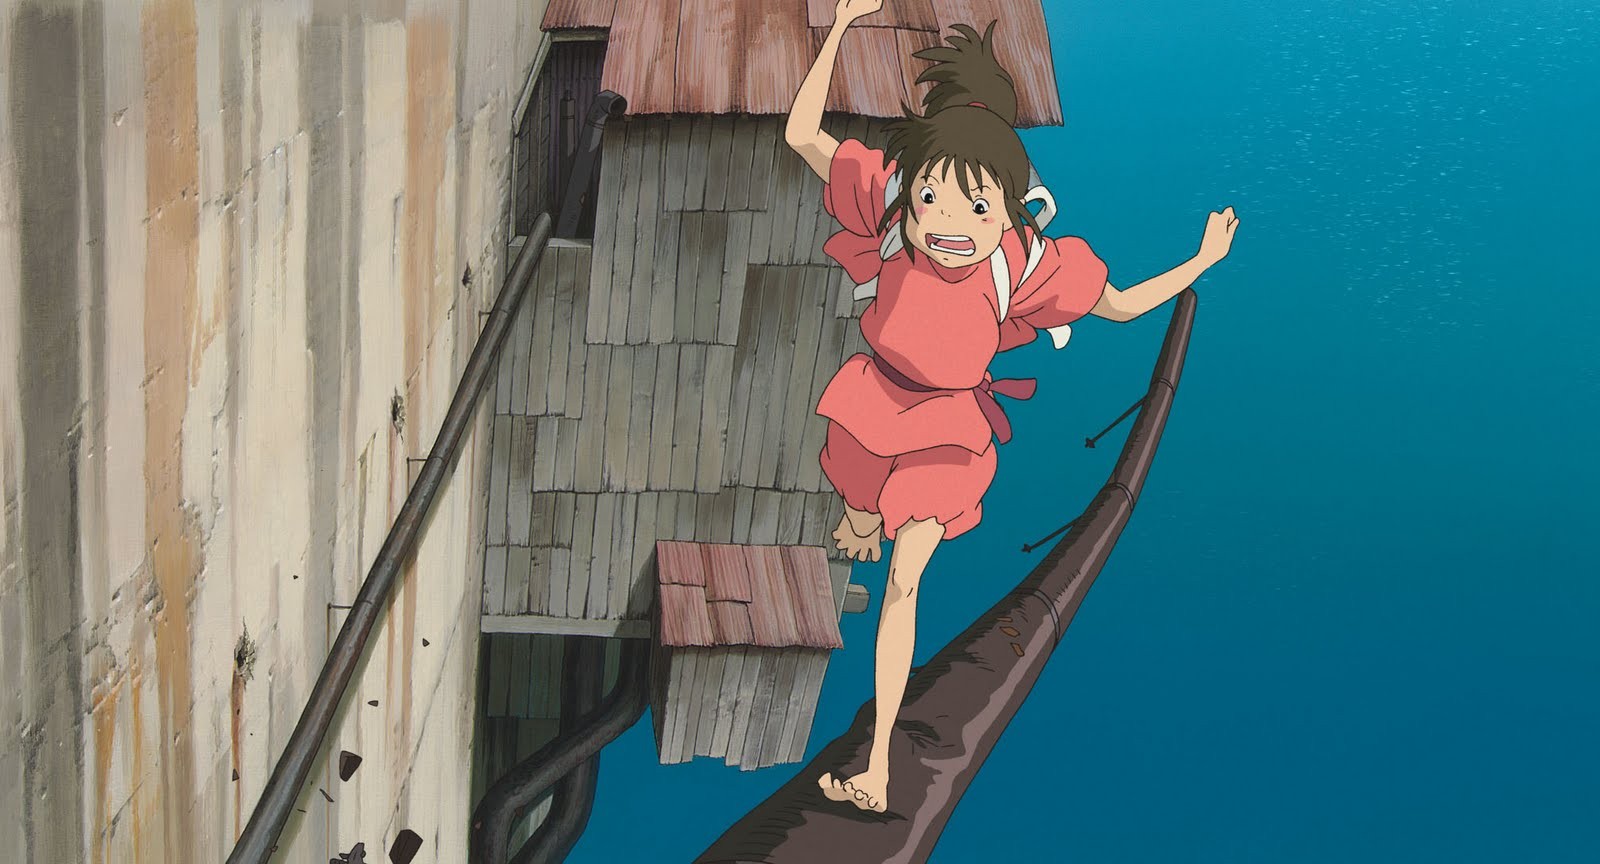 Studio Ghibli Spirited Away Anime Chihiro Anime Girls 1600x864